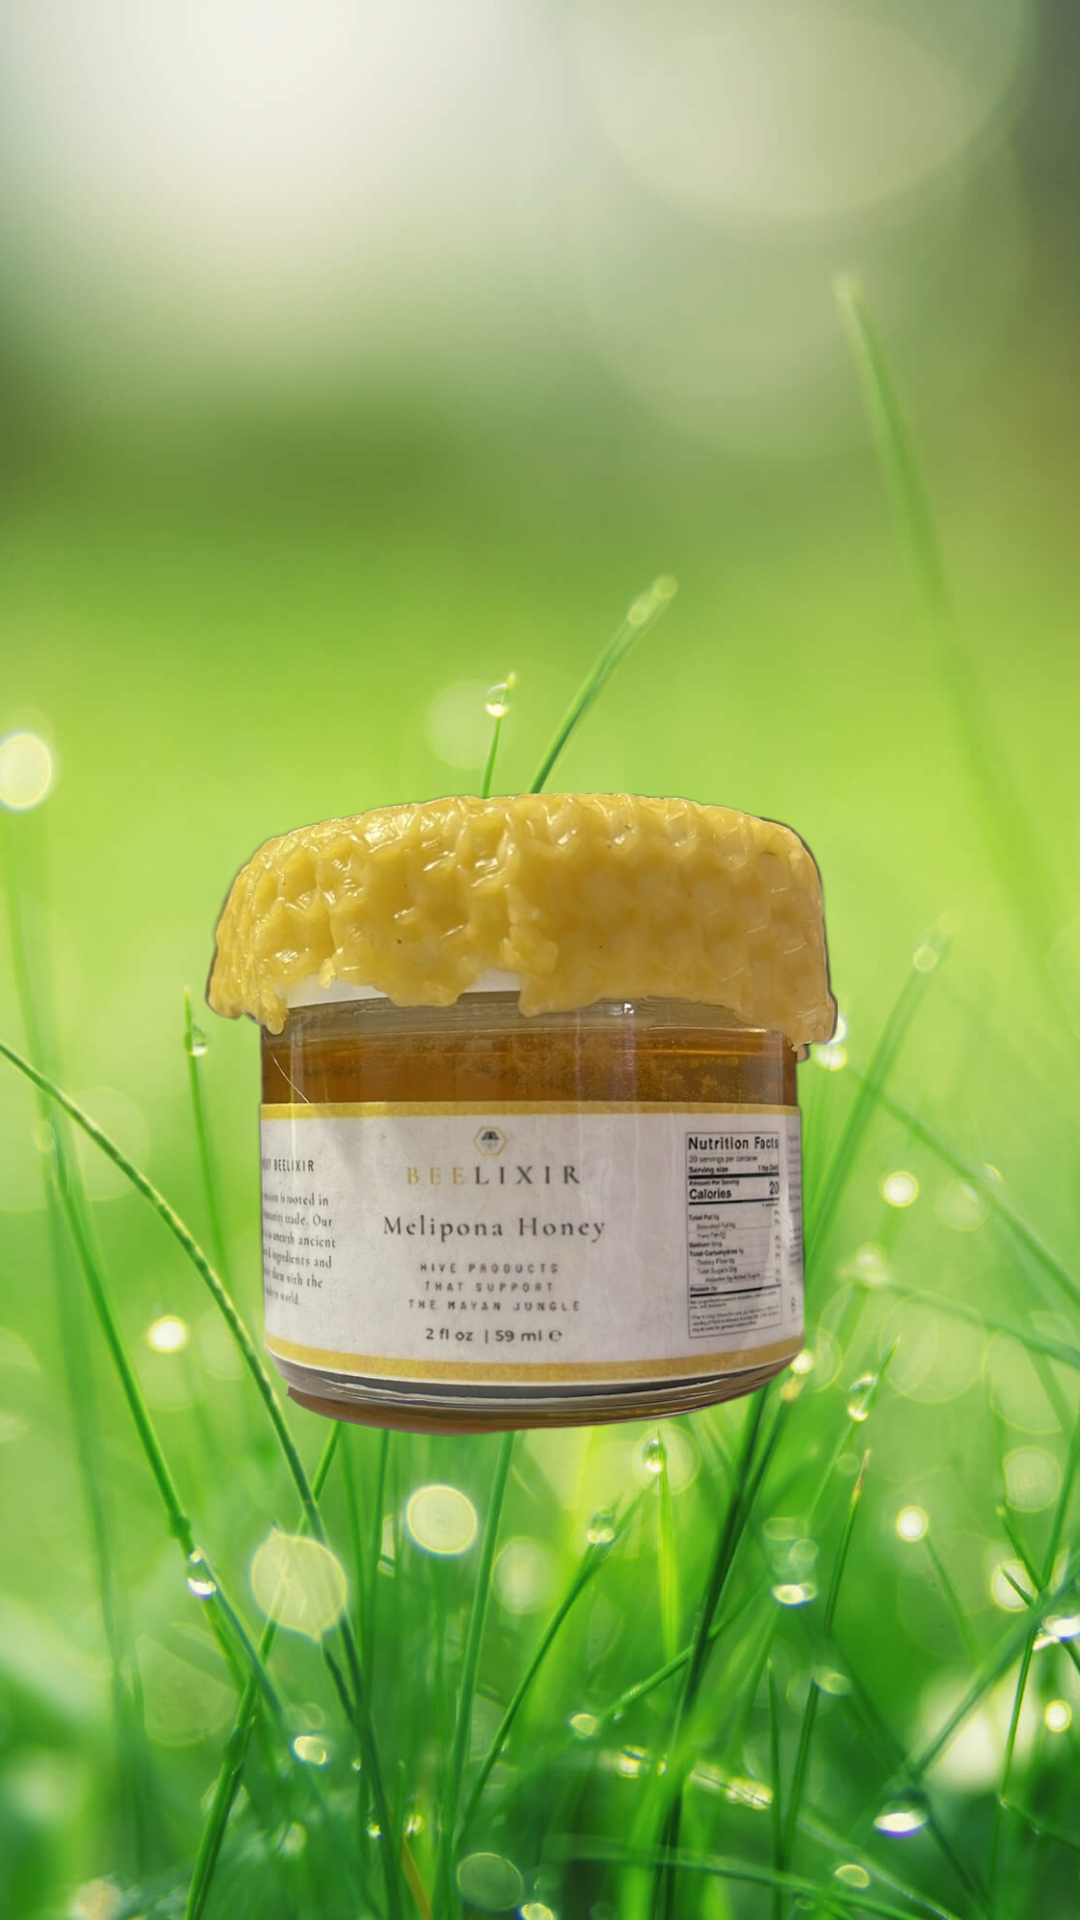 Melipona Honey 2 fl oz/59 ml (Luxury Hotel gift box presentation)